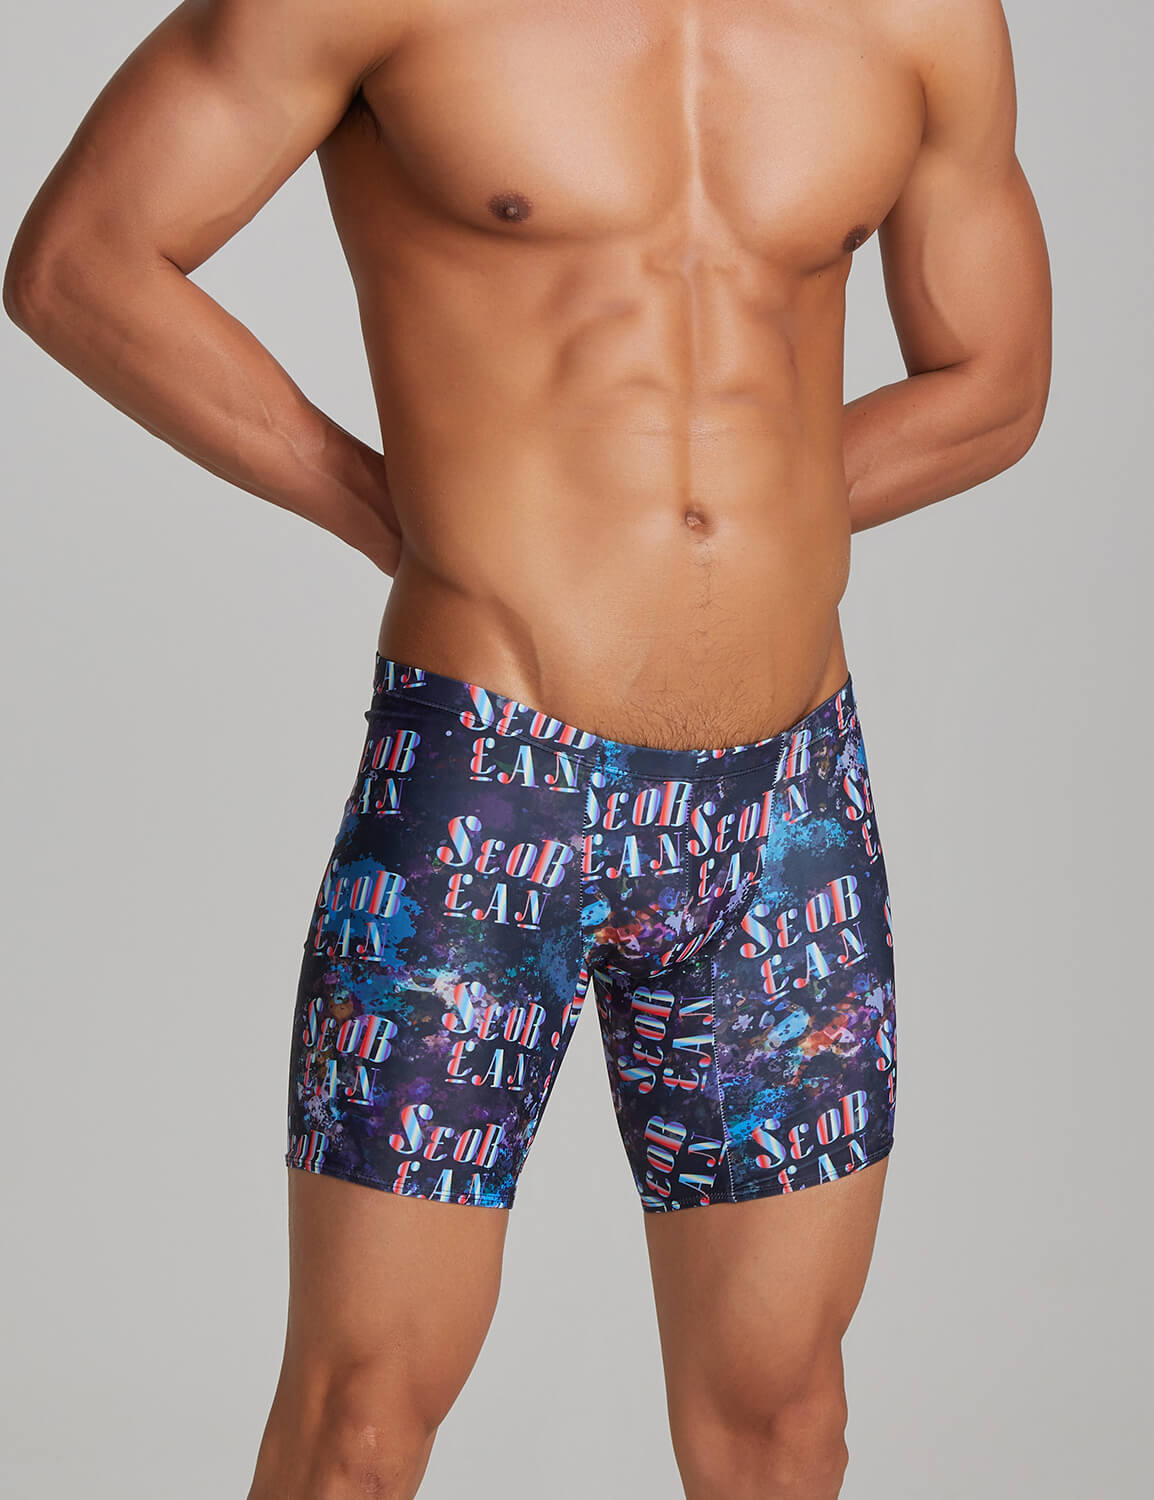 SEOBEAN Mens Sexy Low Rise Long Swim Boxer Swimwear 220802 – SEOBEAN®